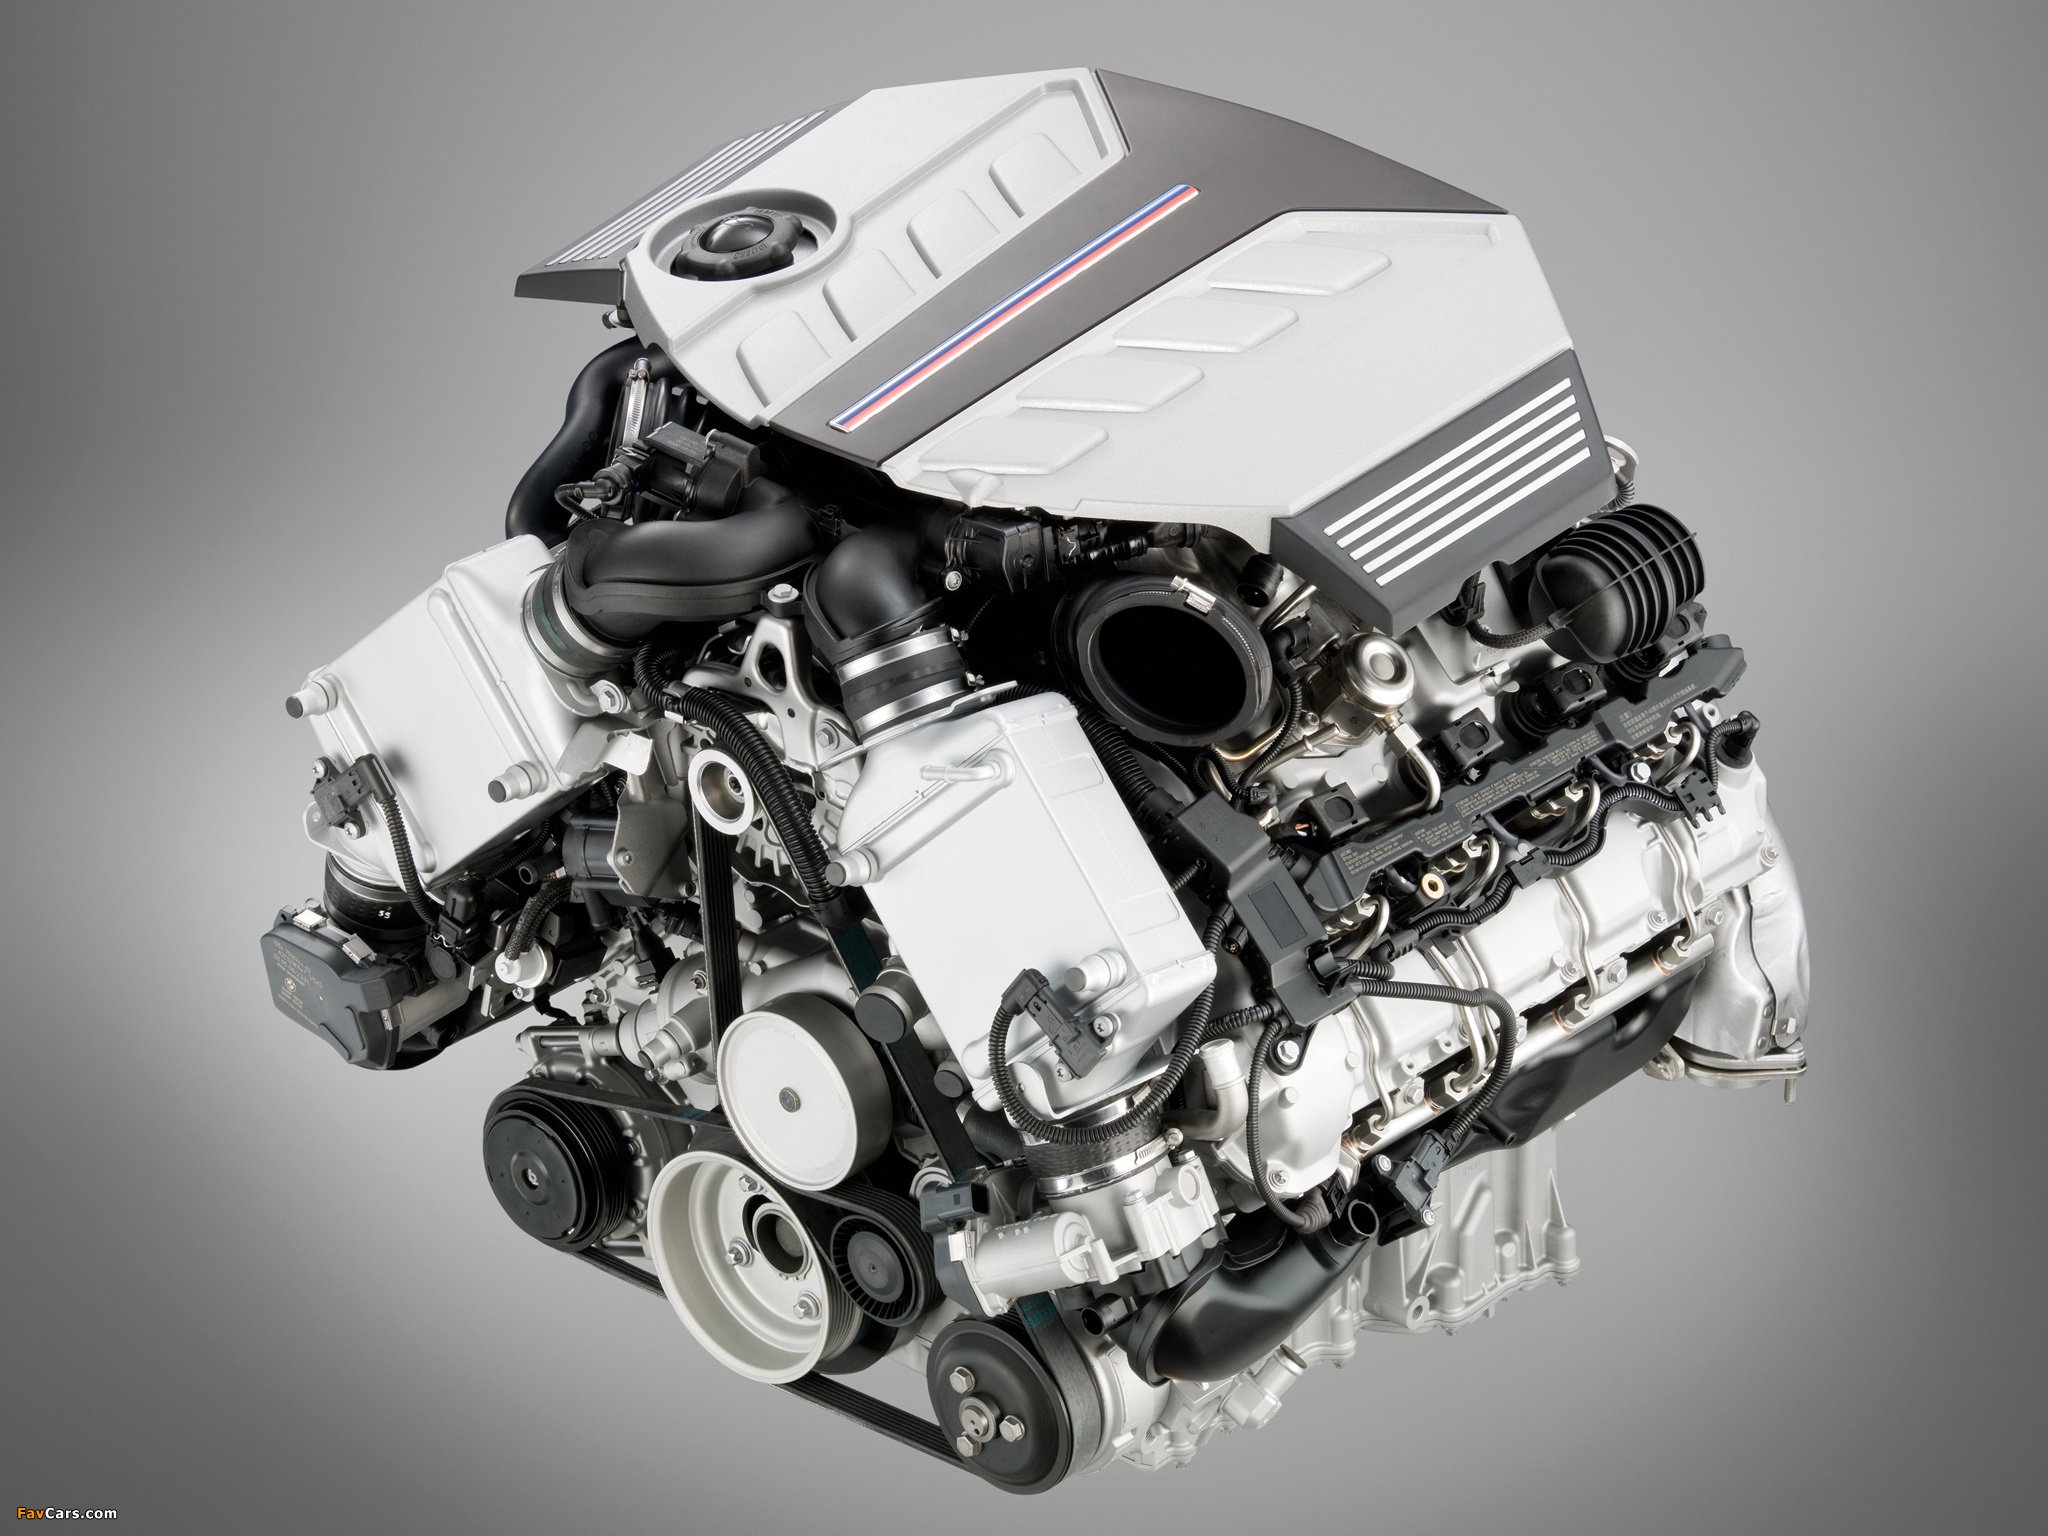 Bmw x6 двигатели. S63 двигатель БМВ. 4.4 S63 мотор БМВ. BMW x5m мотор. Мотор БМВ s63b44a.